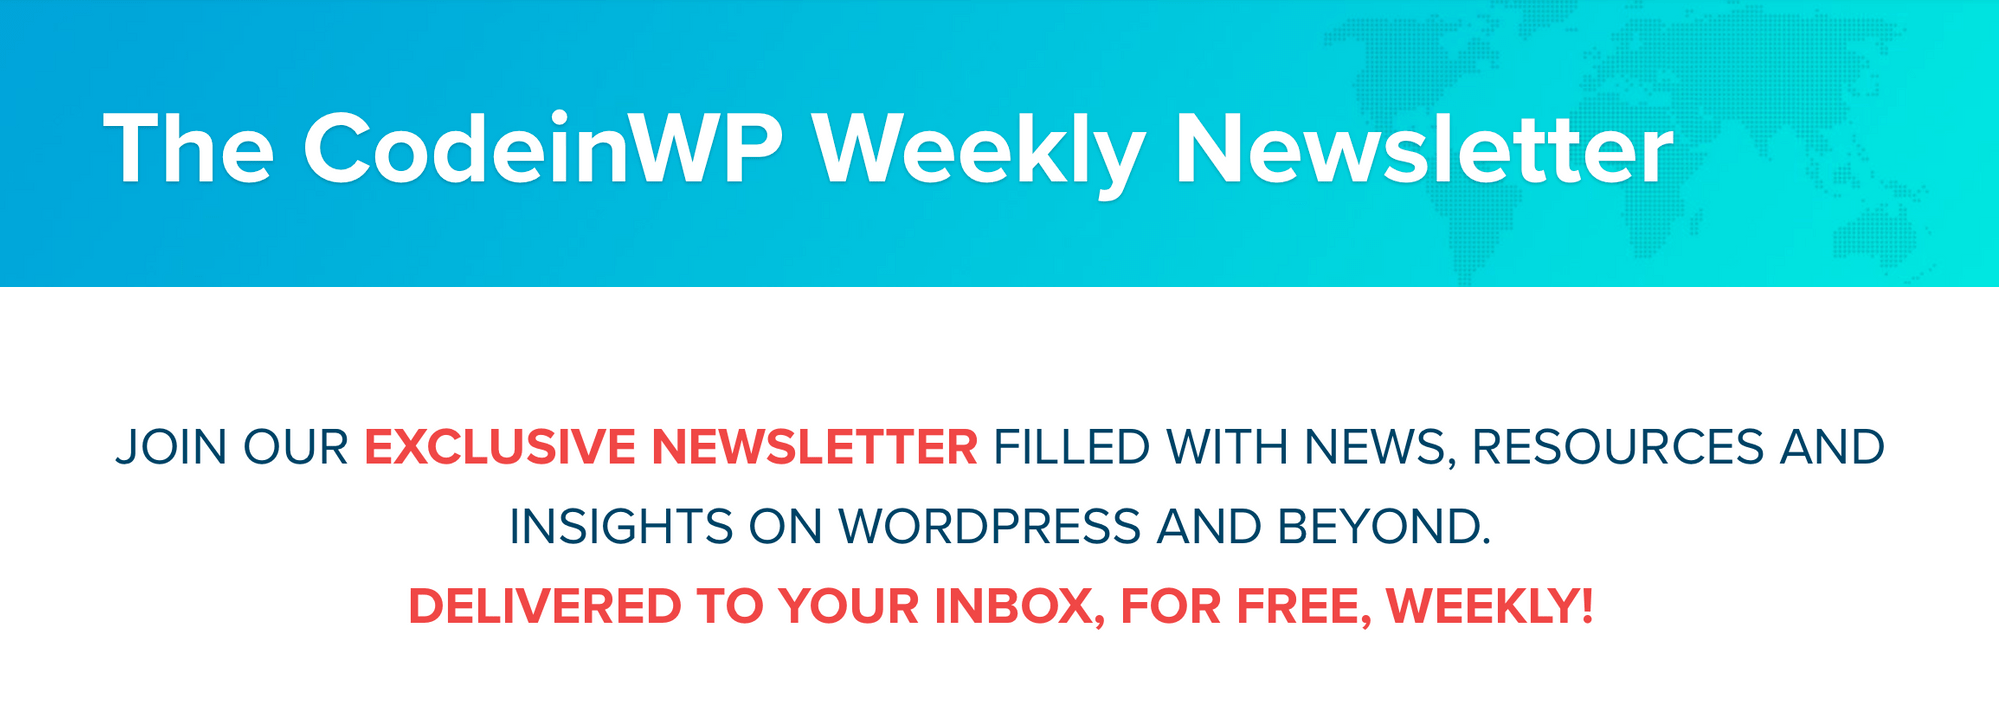 CodeinWP每周WordPress新闻简报横幅。 